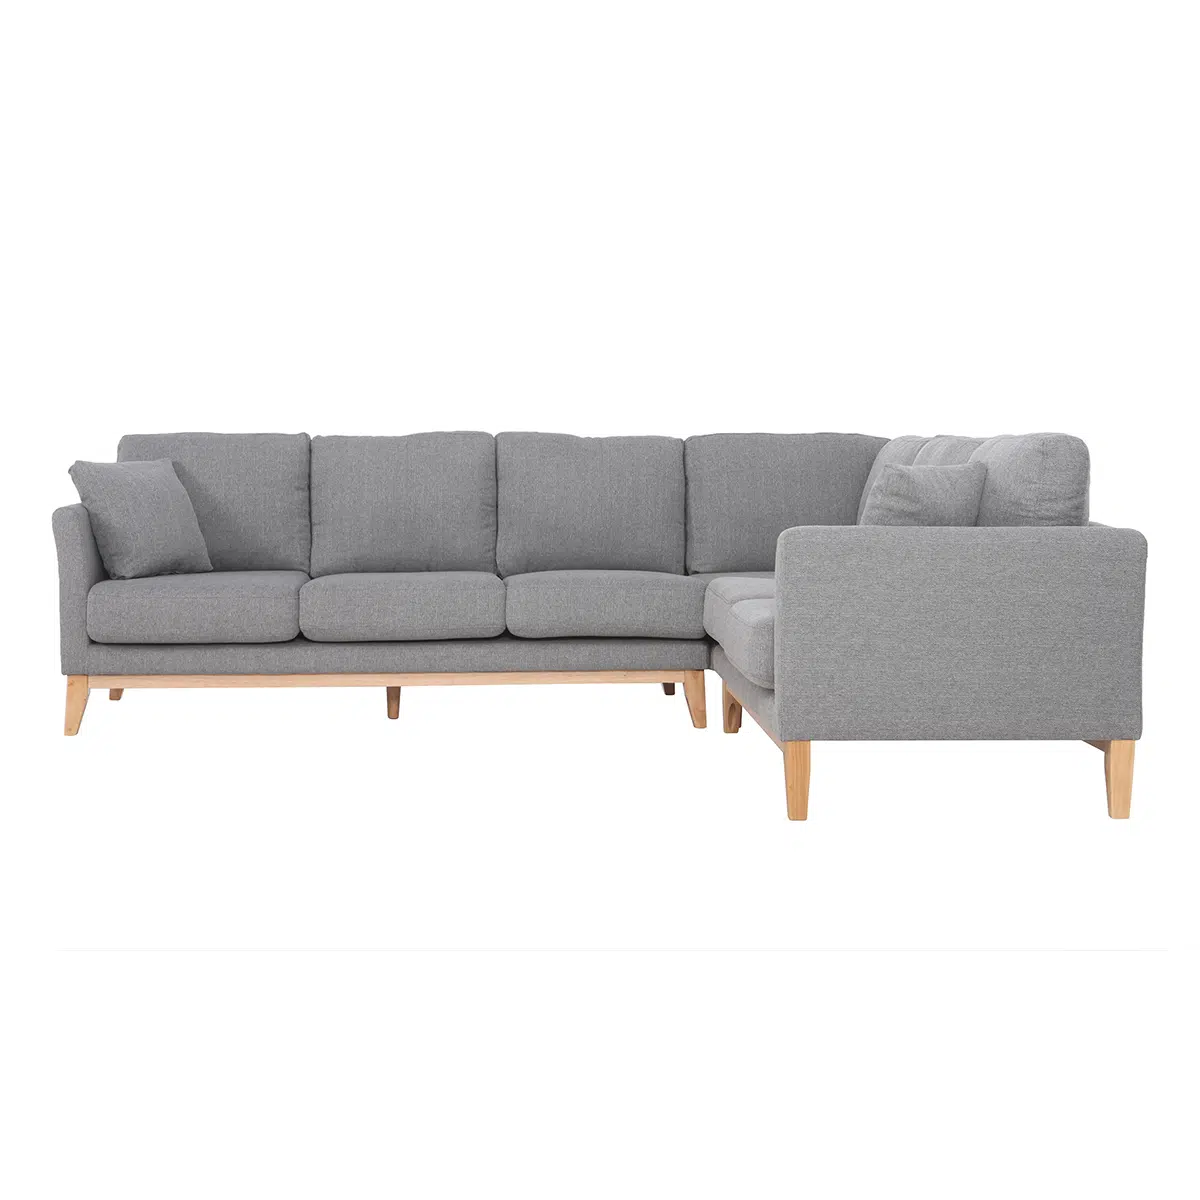 Canapé d'angle déhoussable scandinave 5-6 places en tissu gris clair et bois clair OSLO